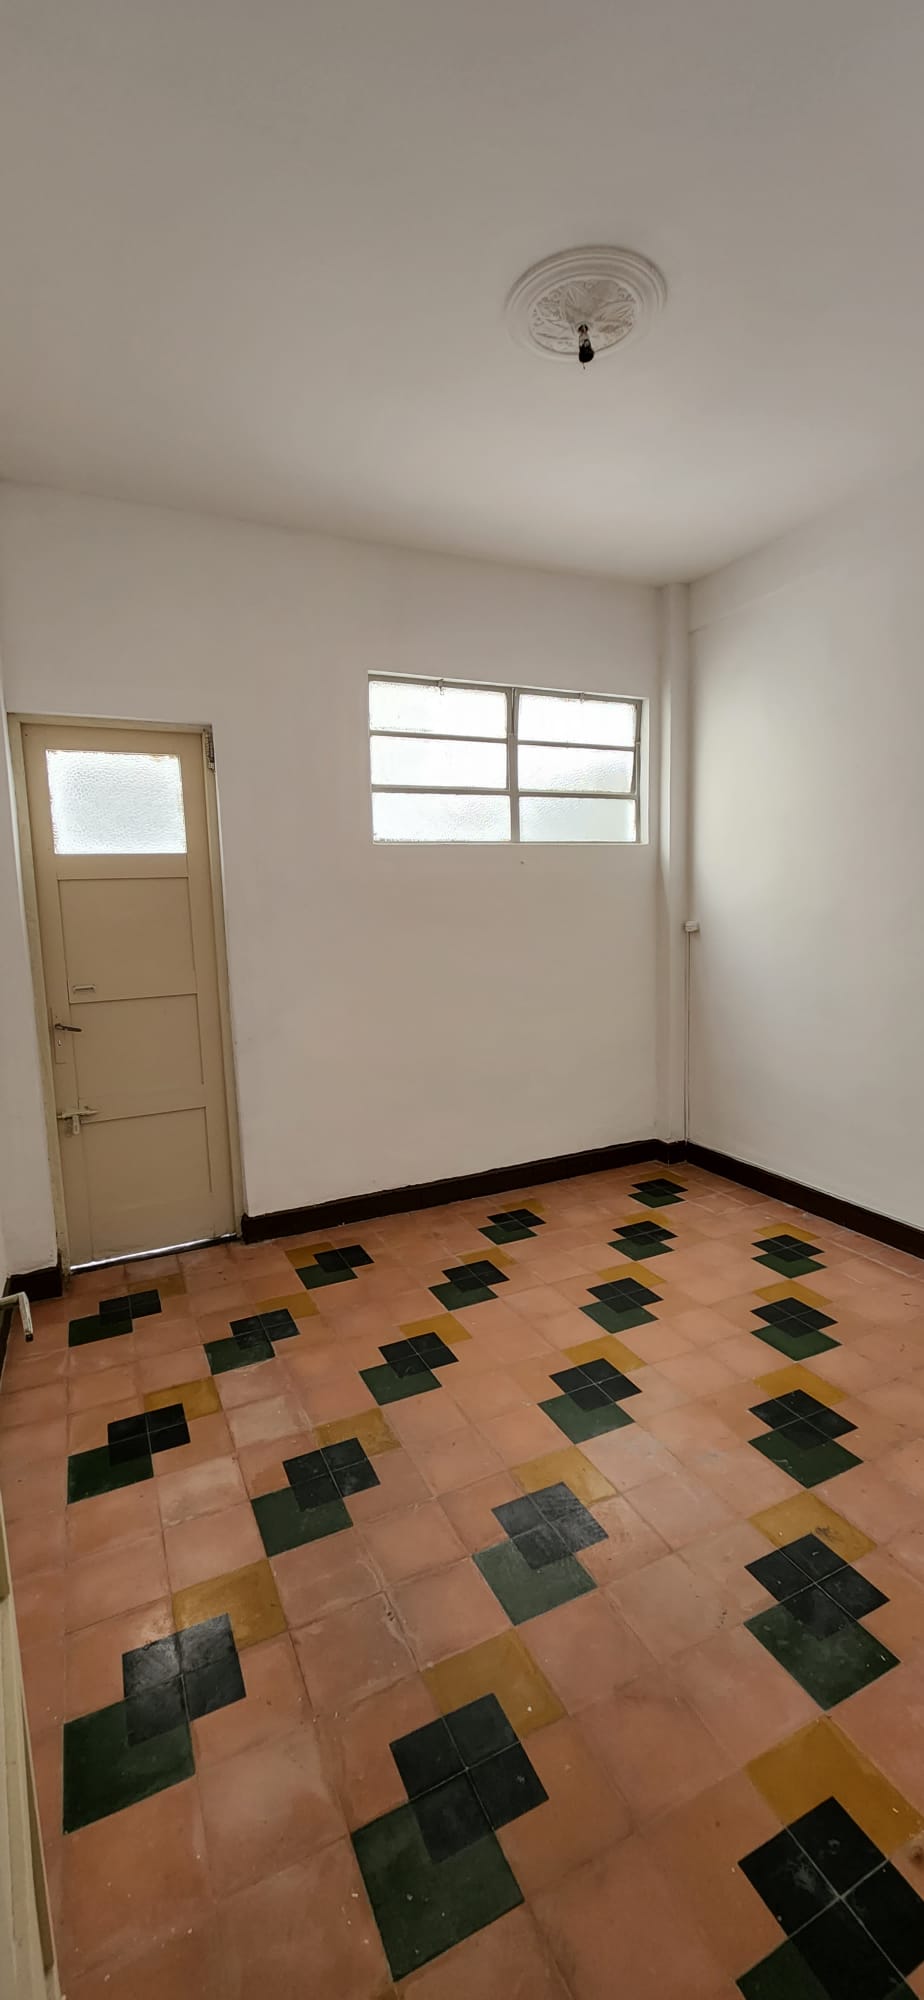 SEÑADO-Alquiler apartamento 2 habitaciones en barrio Tres Cruces